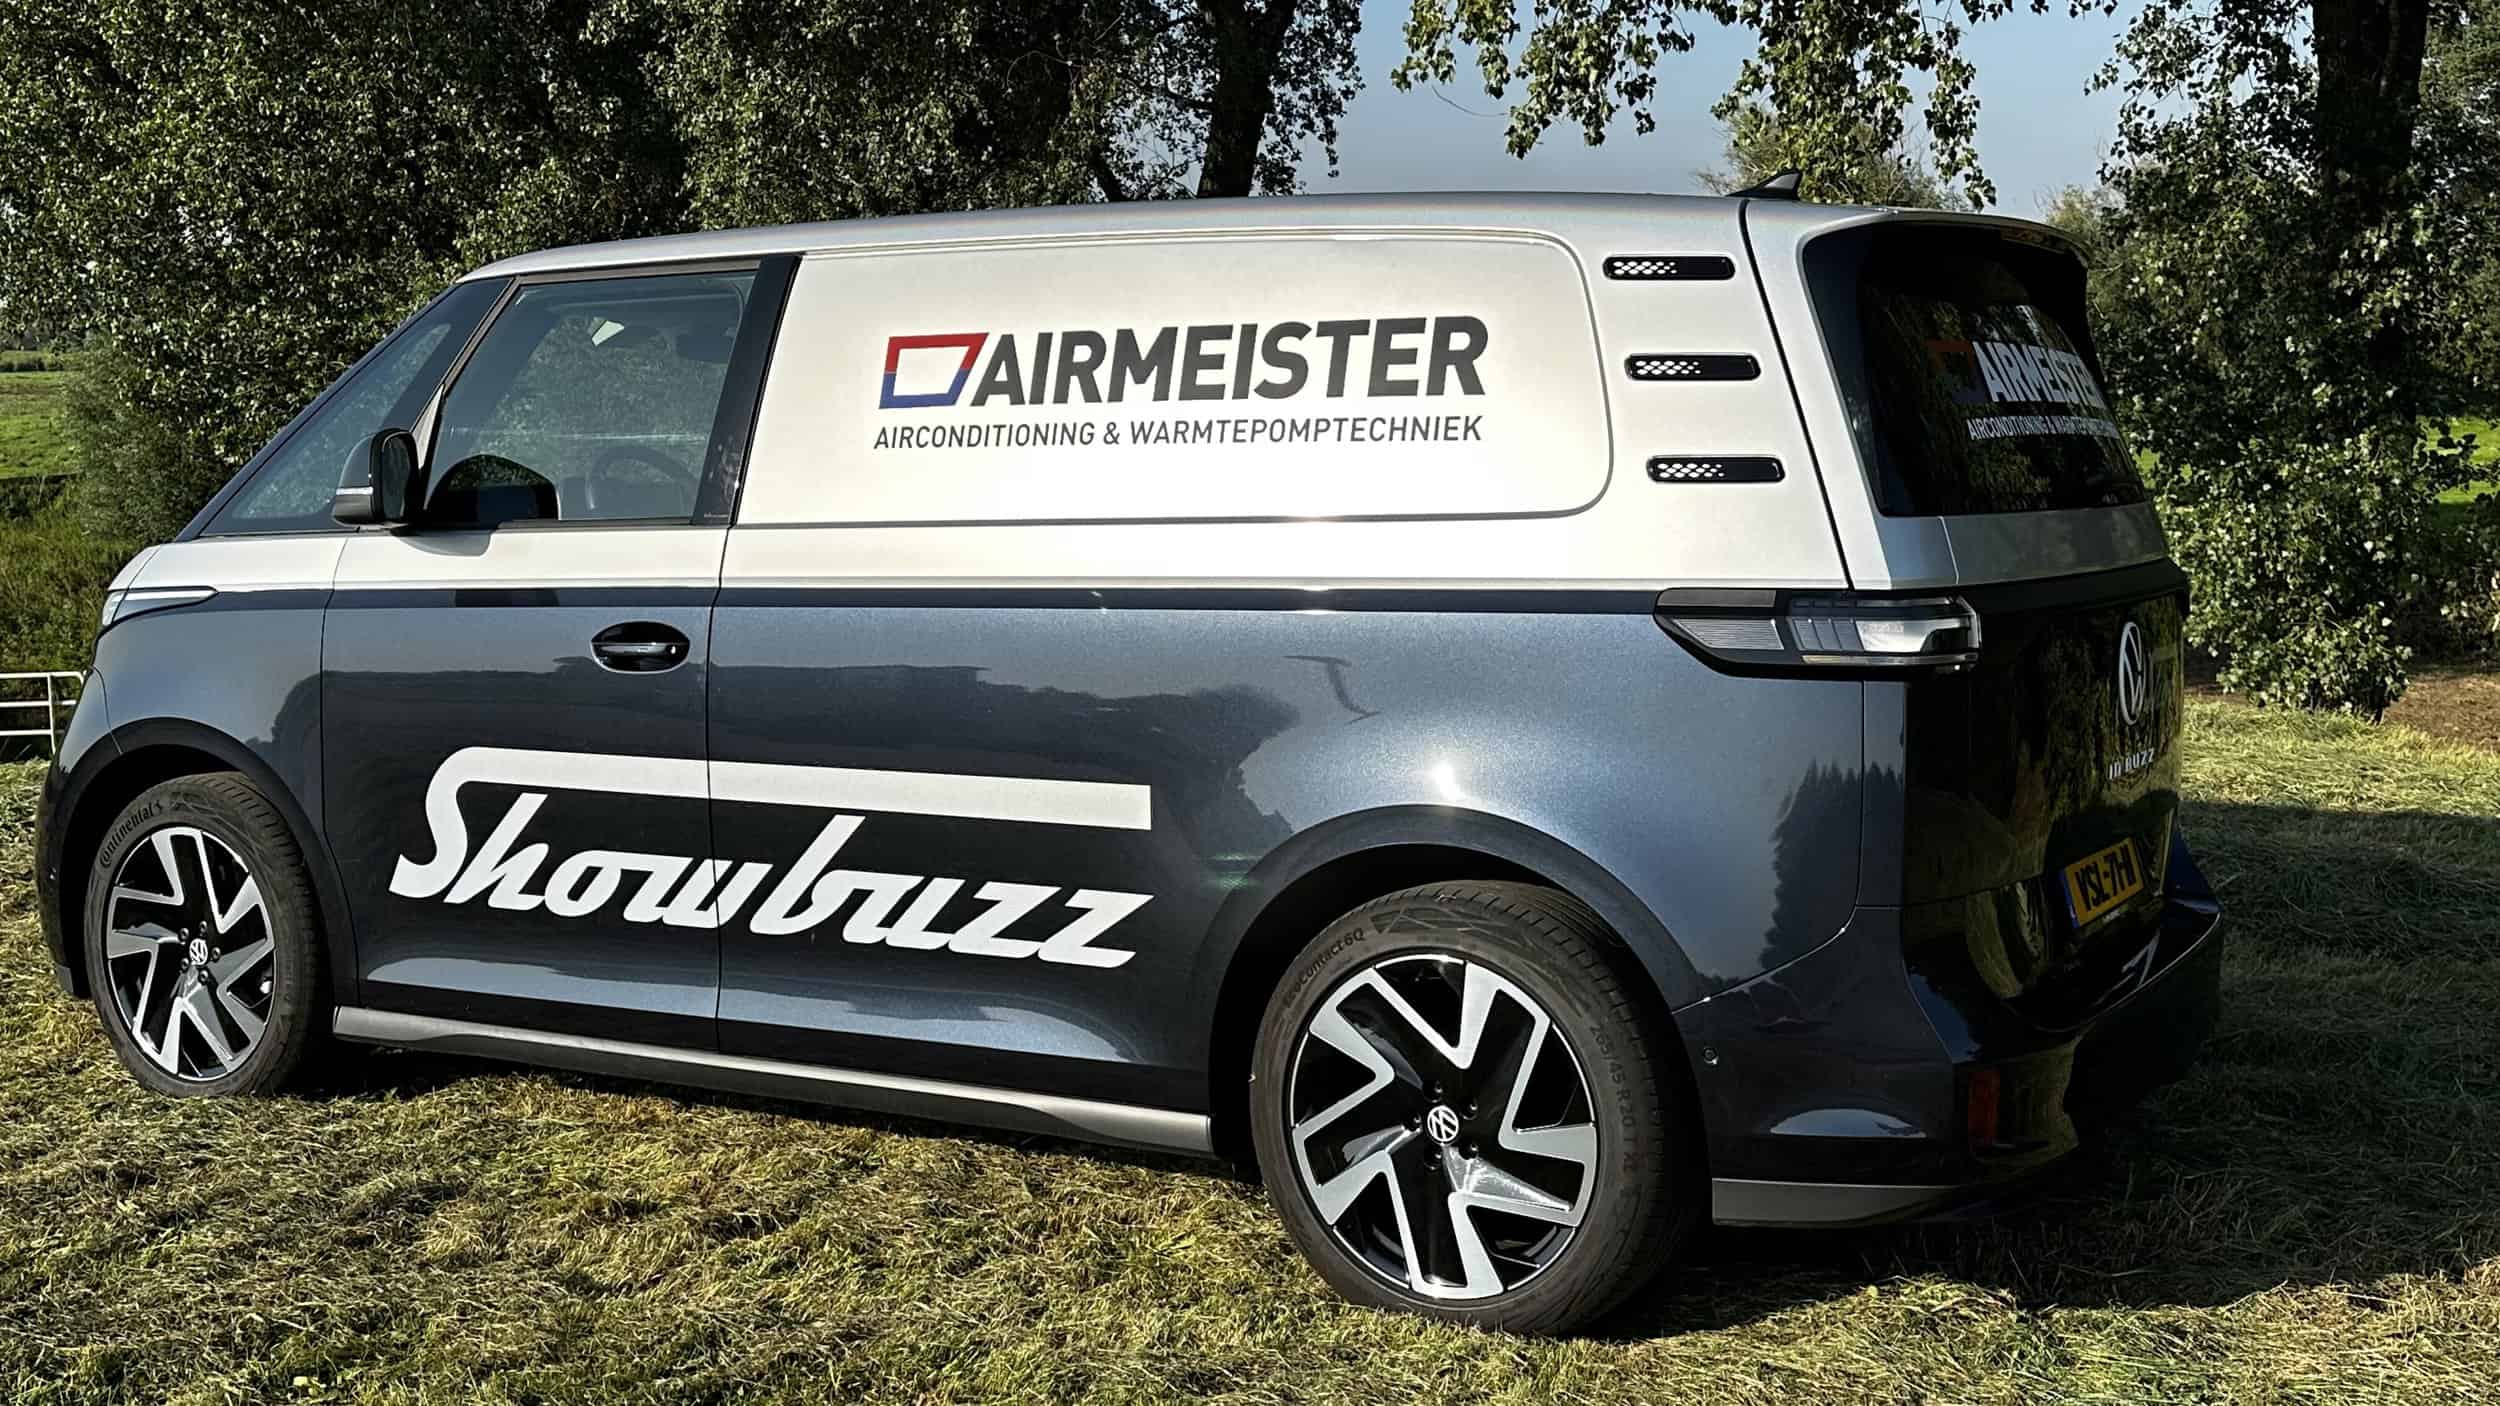 Bedrijfswagen van Airmeister met airconditioning en warmtepomptechniek.